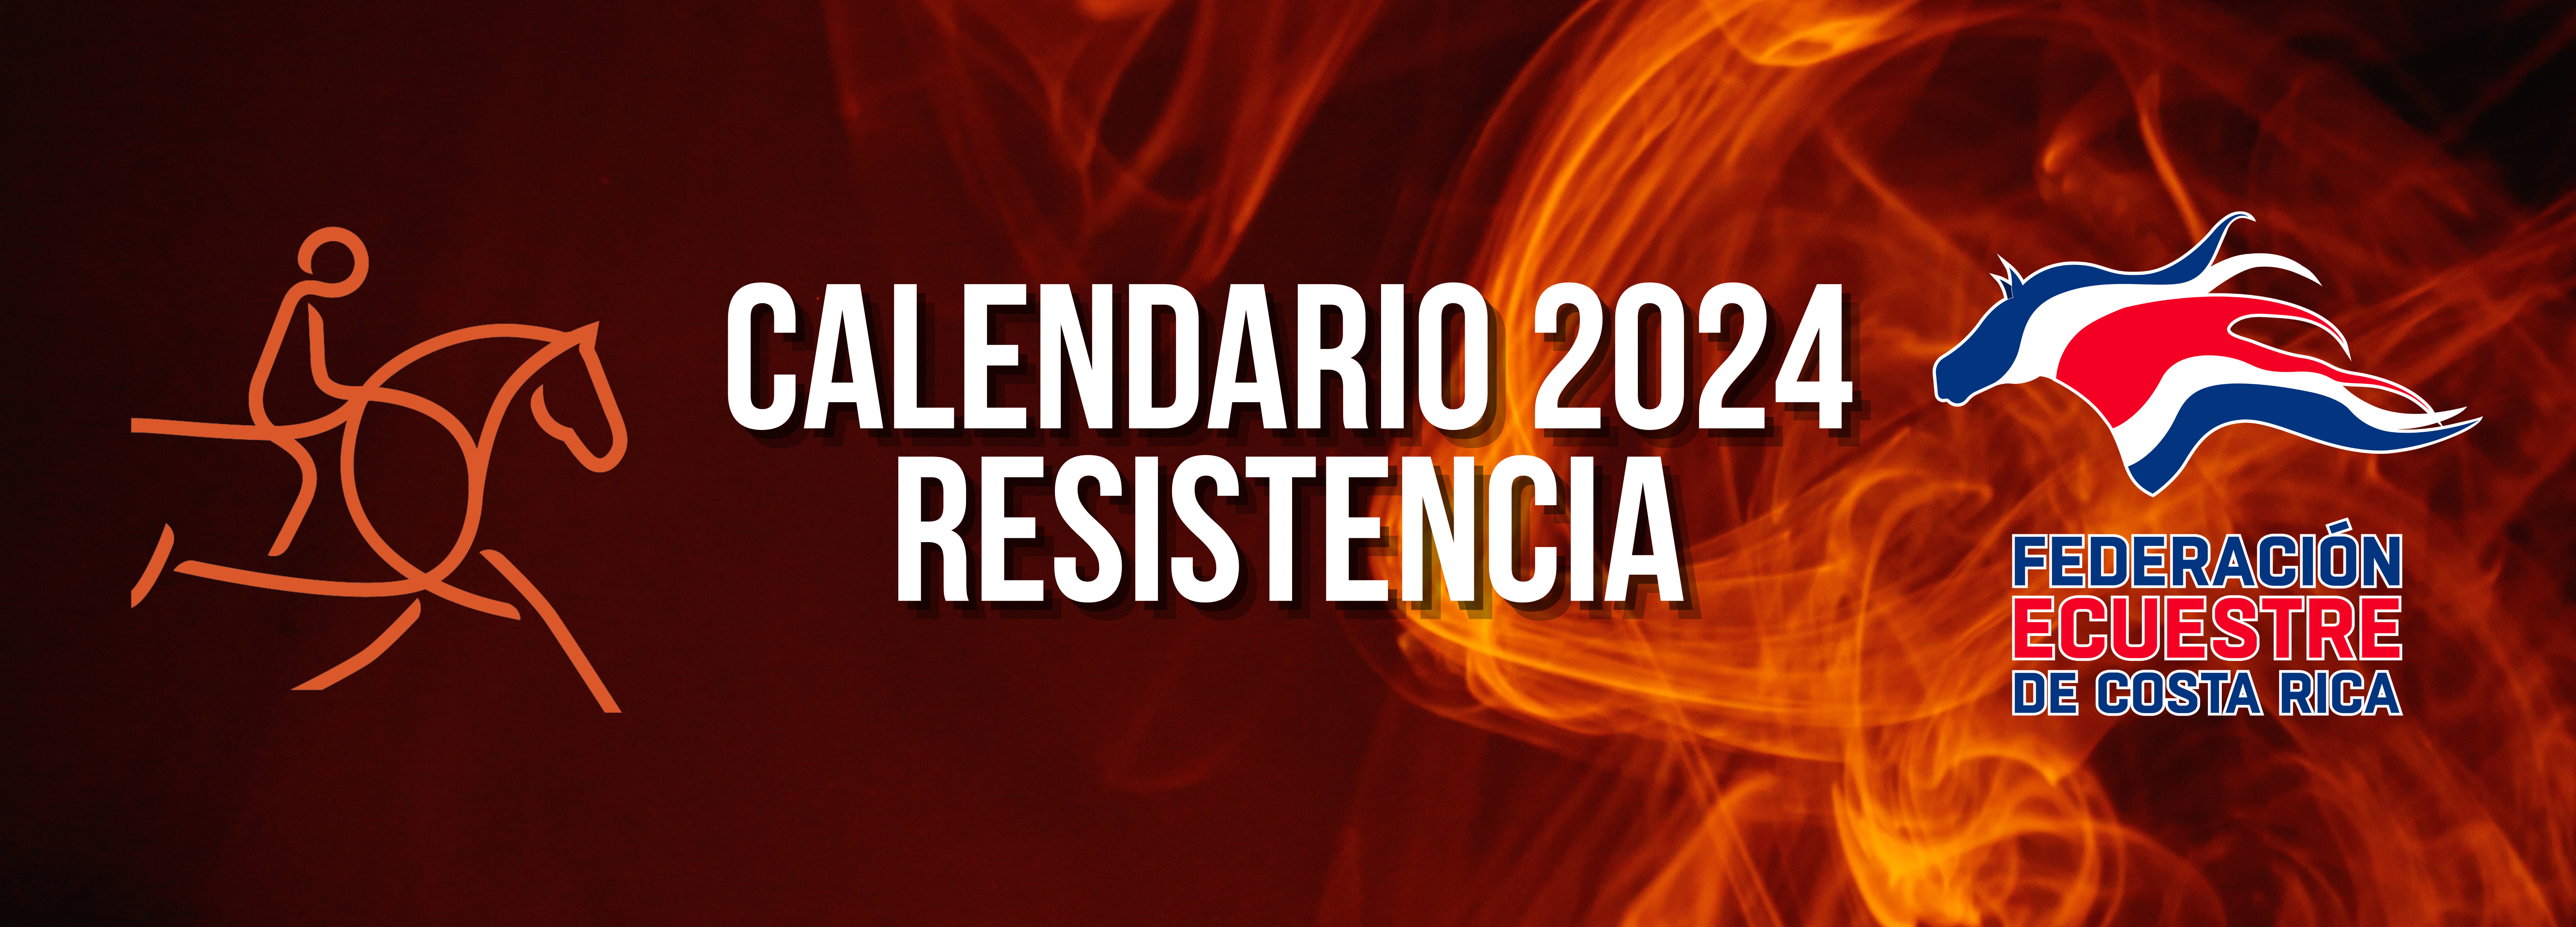 Calendario Resistencia 2024